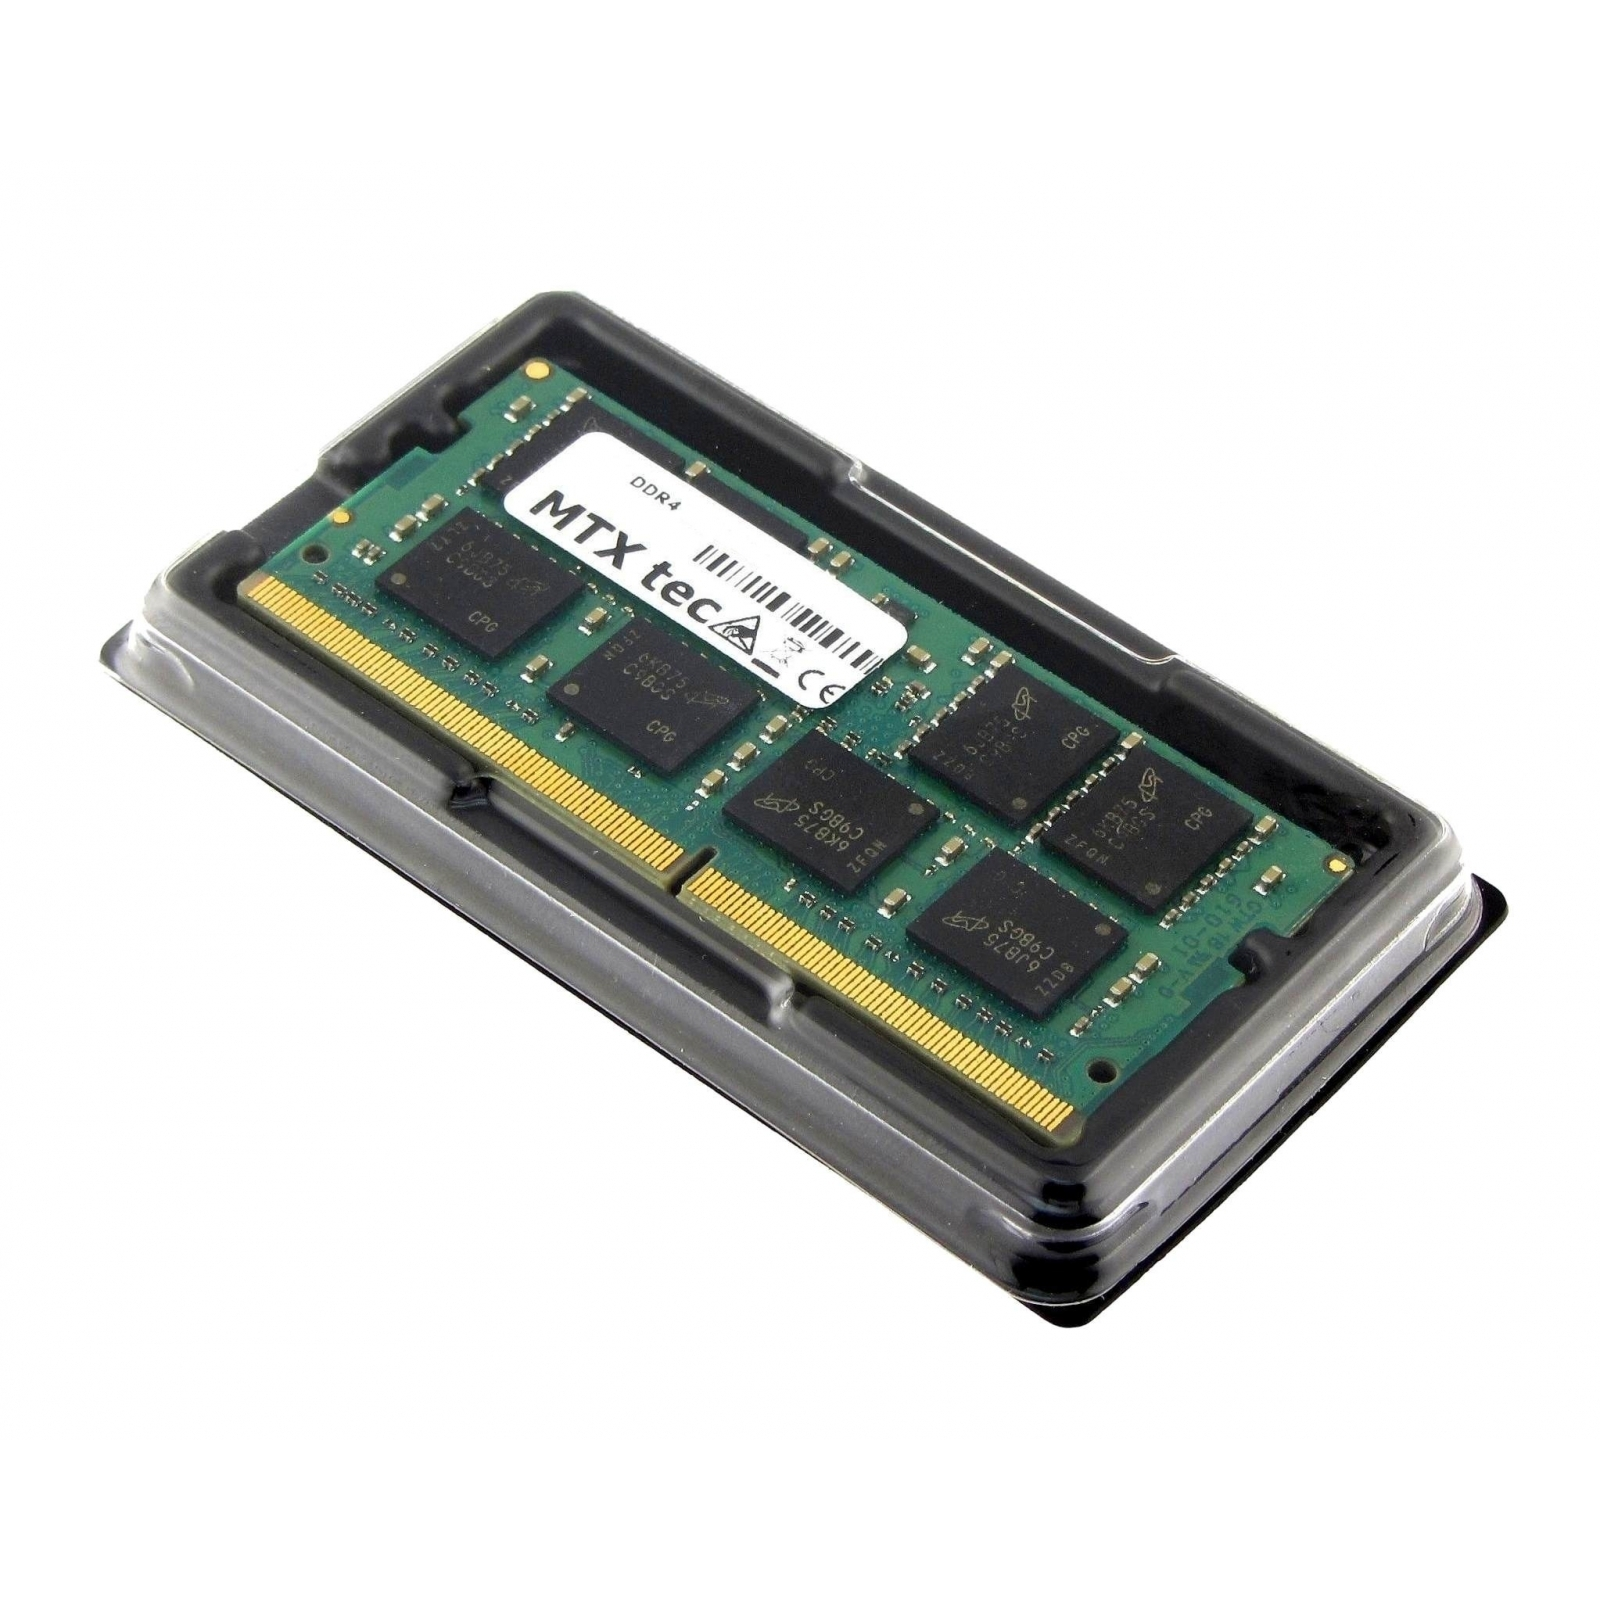 20LT MTXTEC GB L480 GB 16 für 16 Notebook-Speicher LENOVO 20LS, RAM DDR4 ThinkPad Arbeitsspeicher